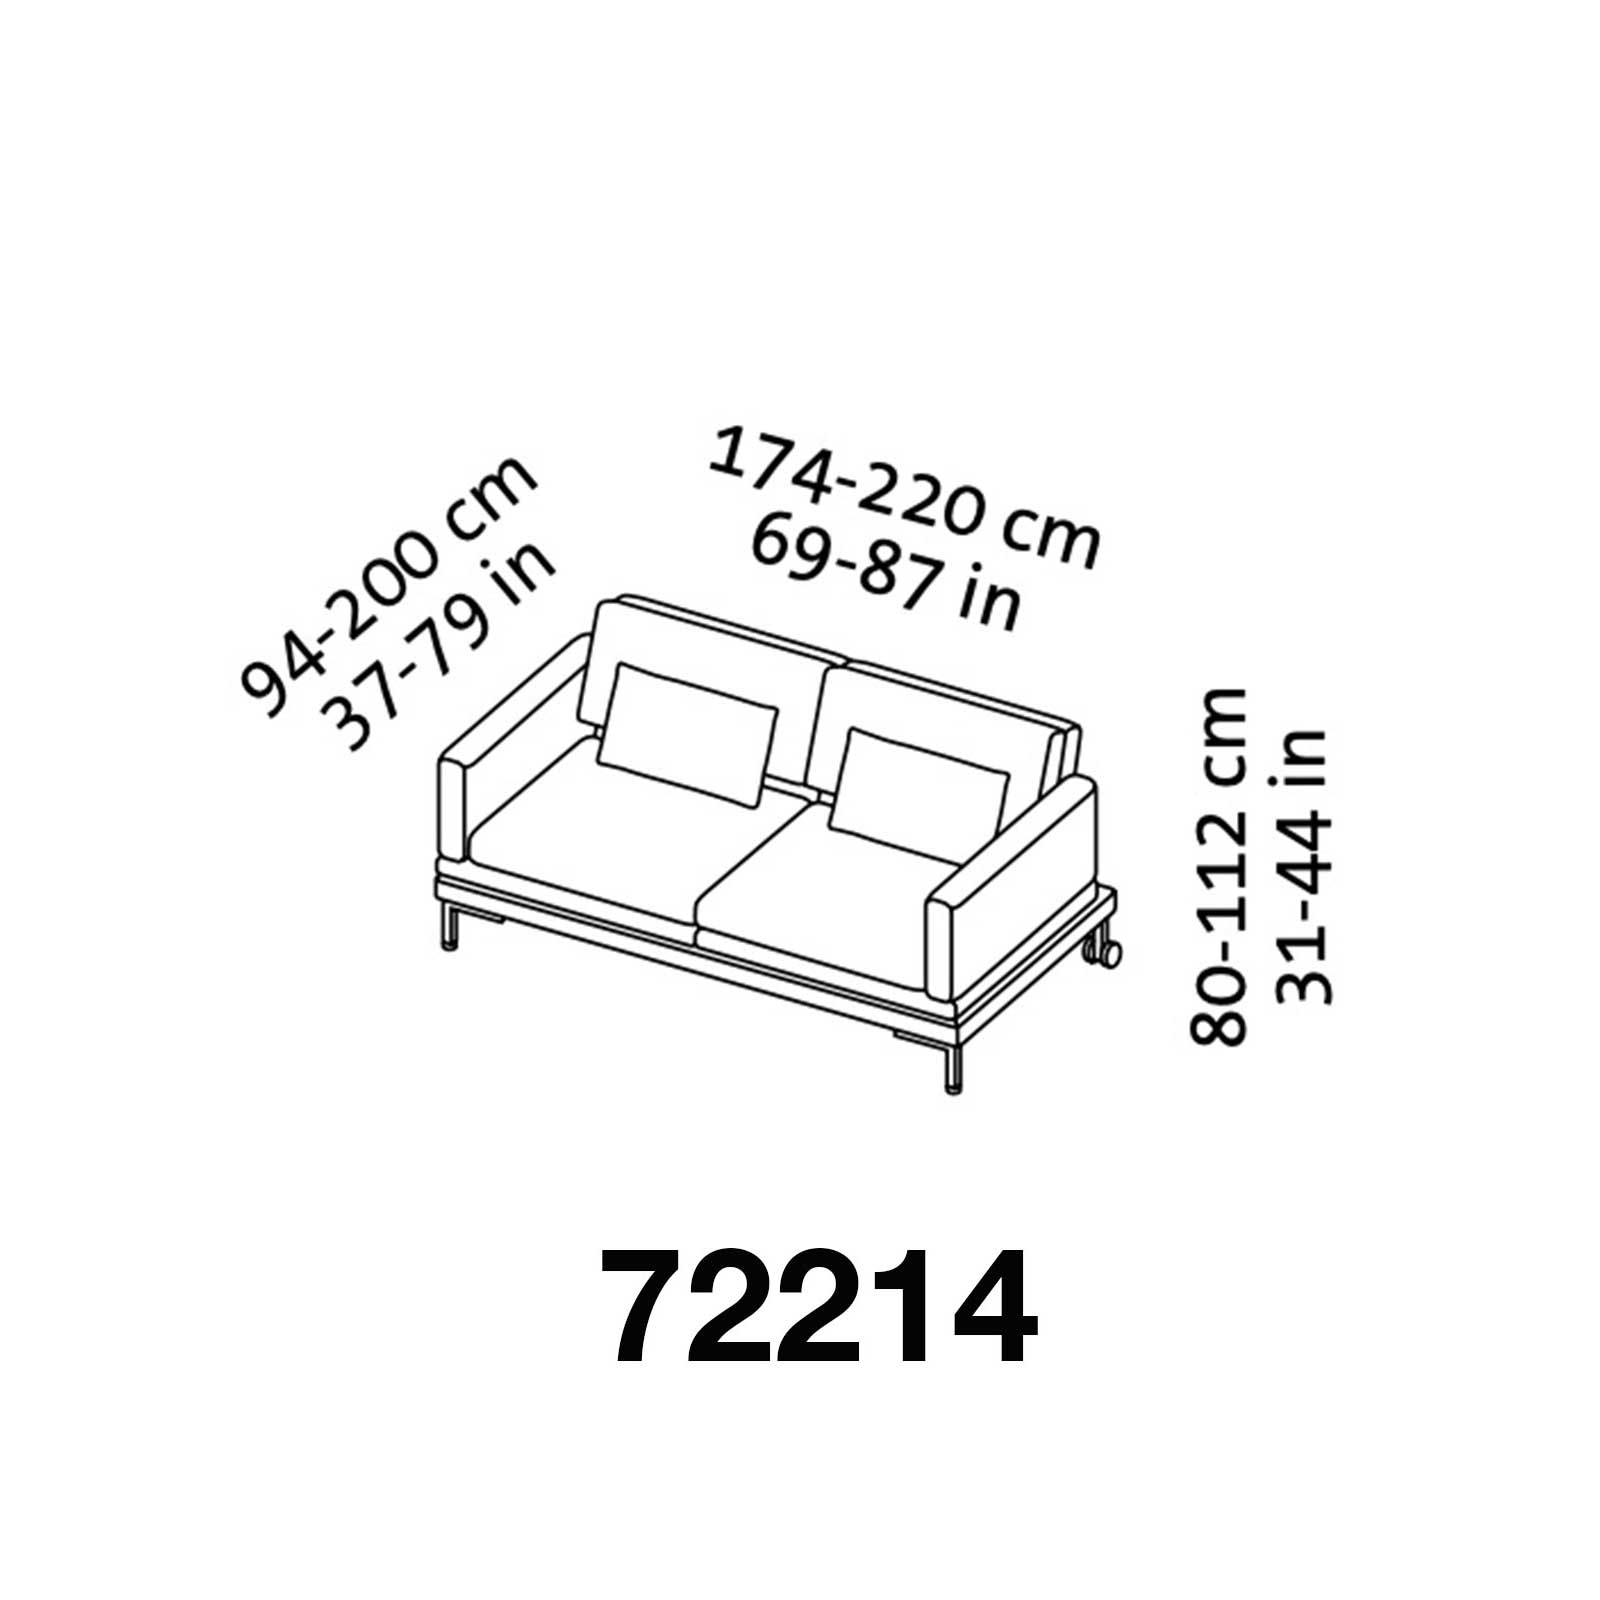 fold out sofas 05 1600